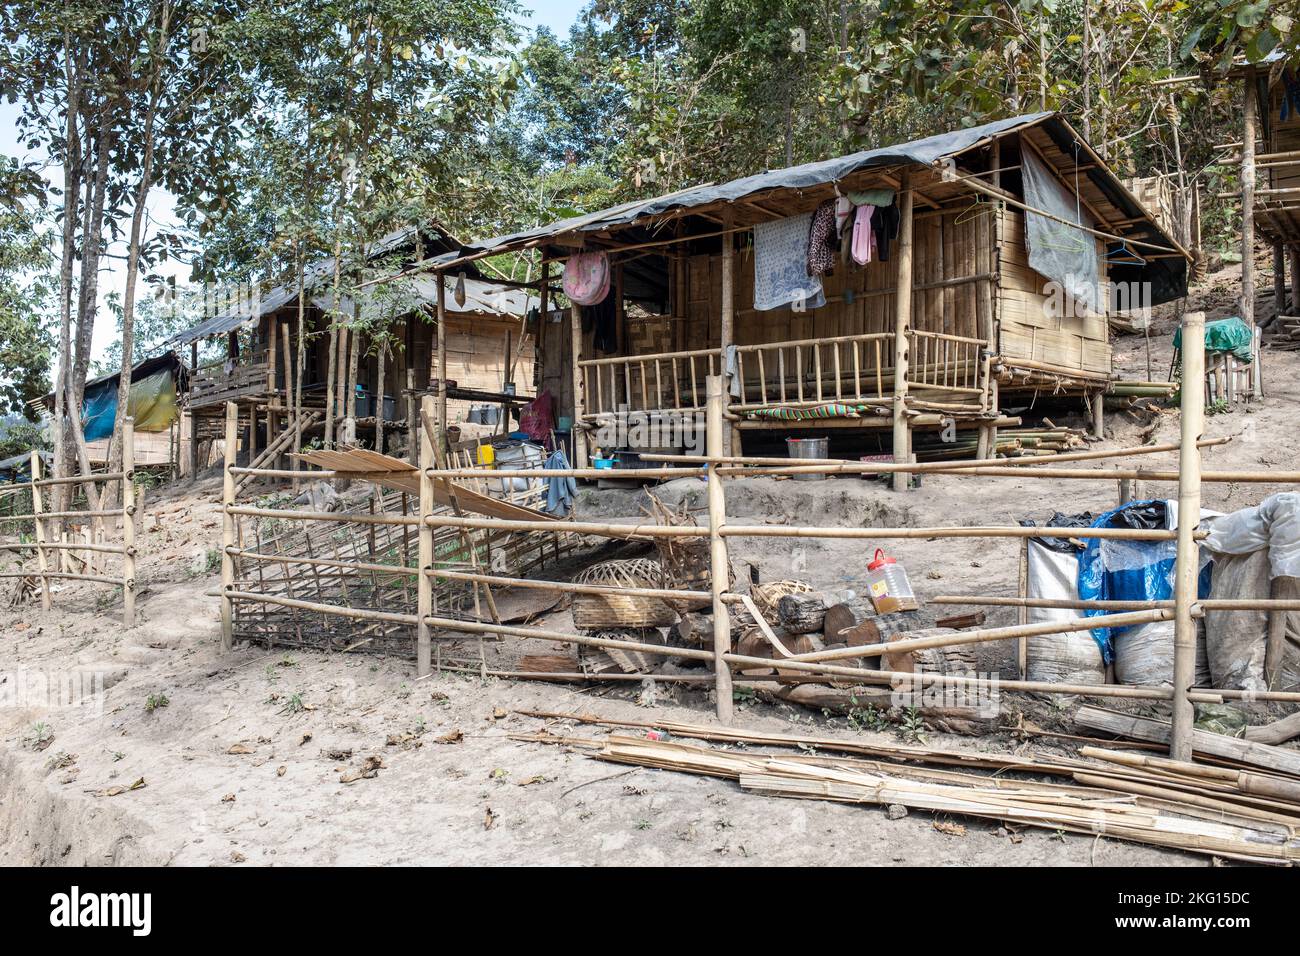 Häuser bleiben leer, nachdem Menschen aus Angst vor Luftangriffen geflohen sind, nahe der Grenze zu Thailand, Myanmar. Stockfoto